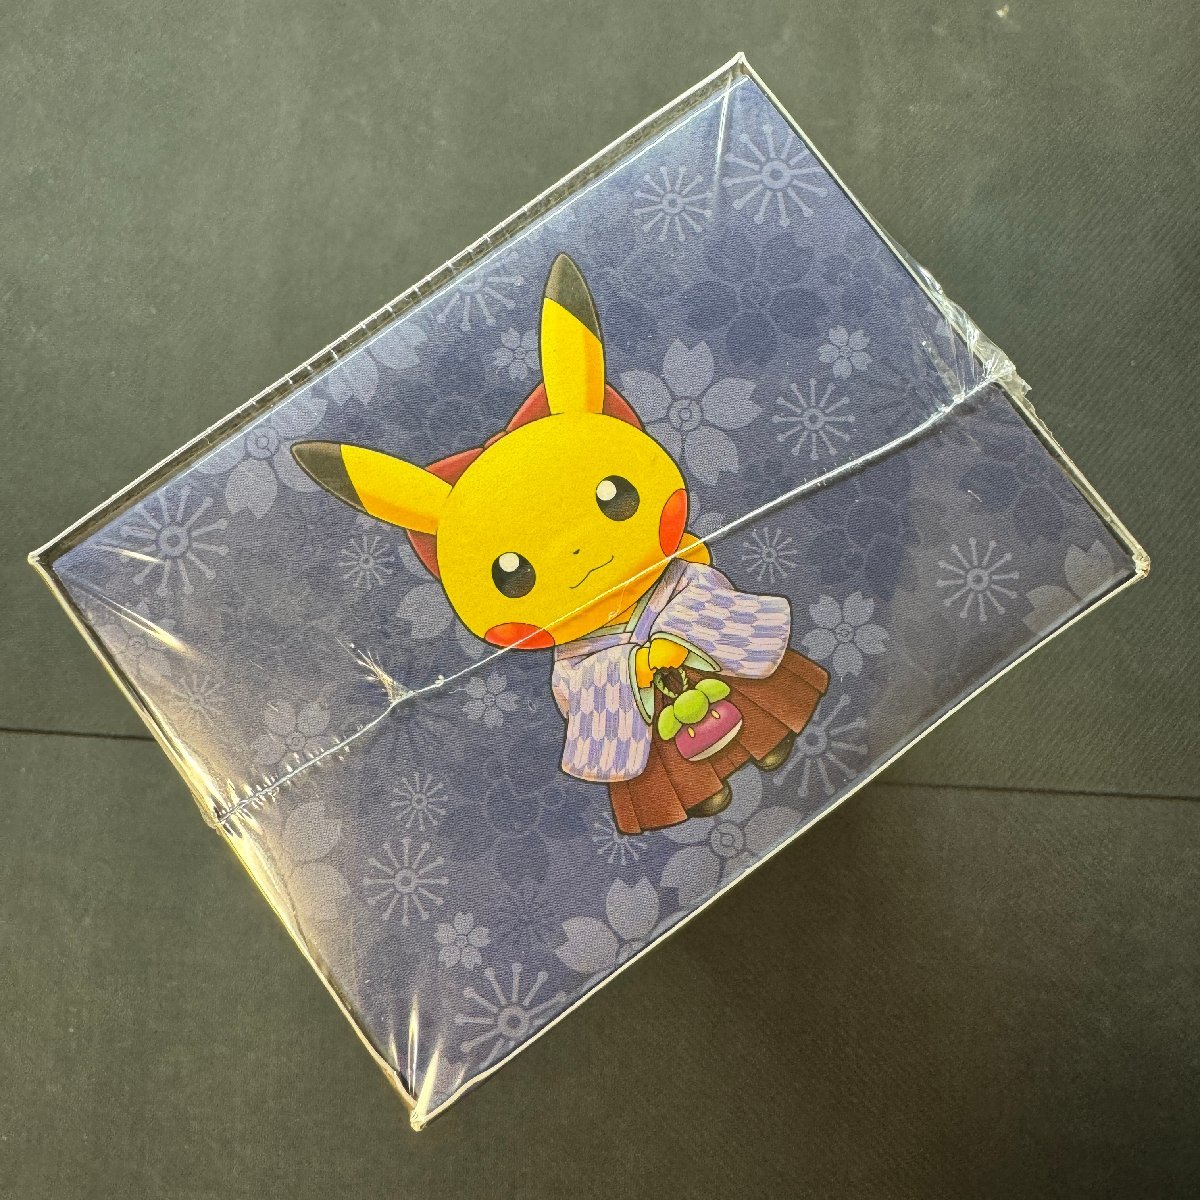 スペシャルBOX ポケモンセンタートウキョーDX 未開封 シュリンク付き BOX 袴姿のピカチュウ ポケカ Japanese Pokemon Card_画像3